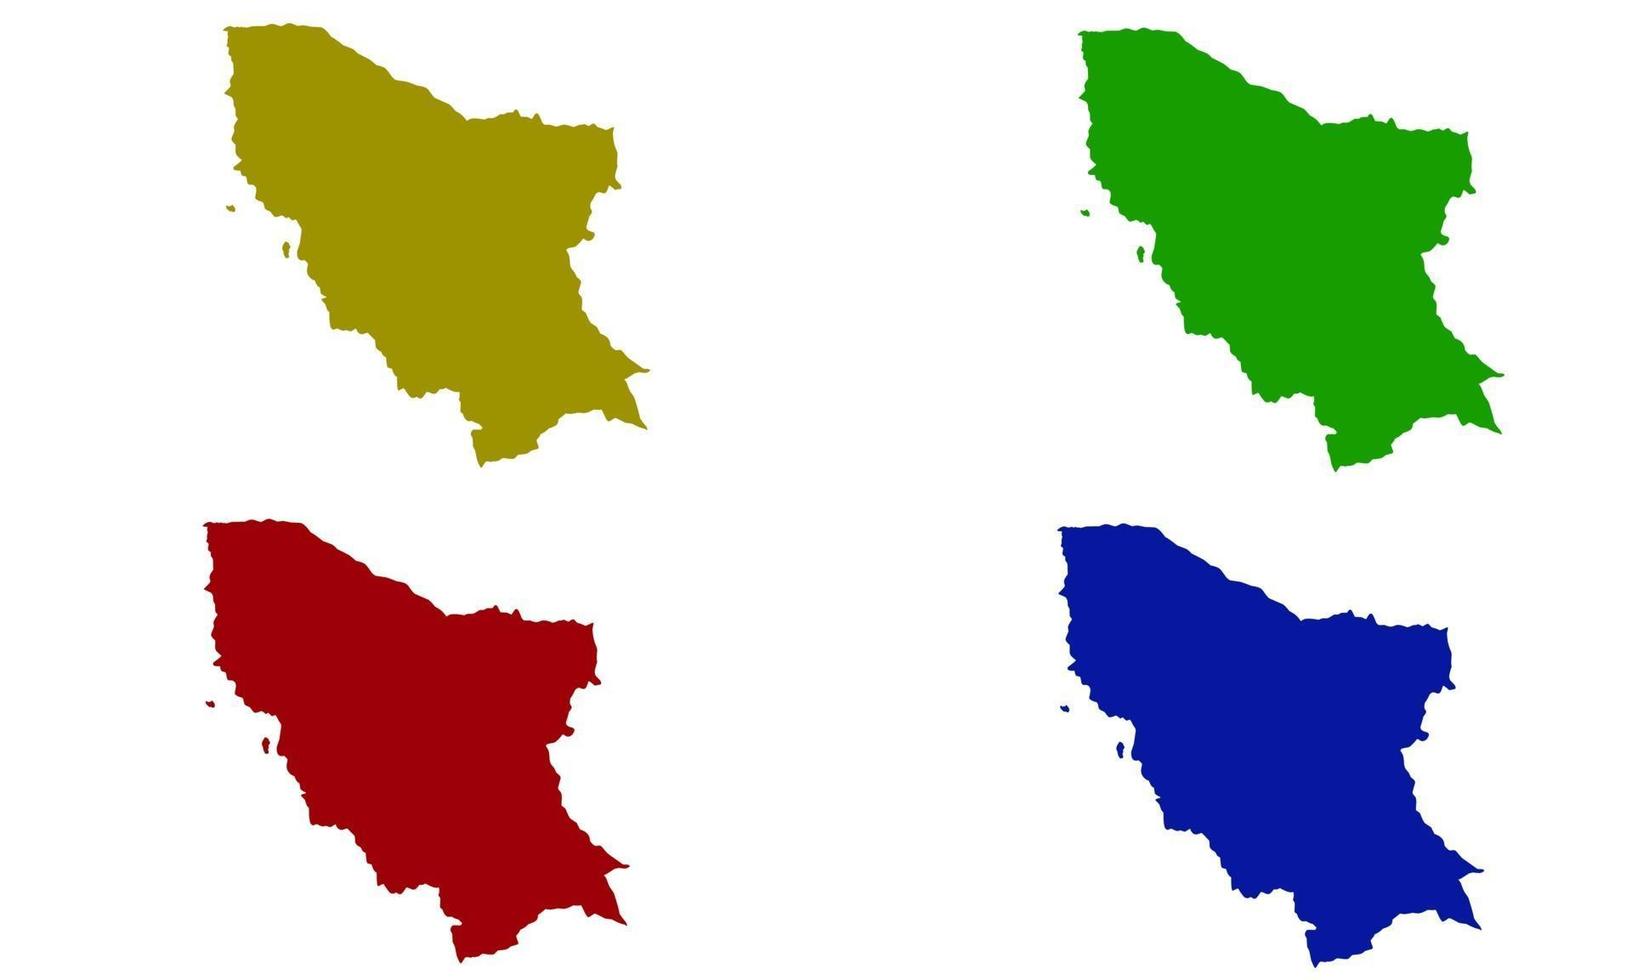 silueta de mapa del condado de marsabit en kenia vector